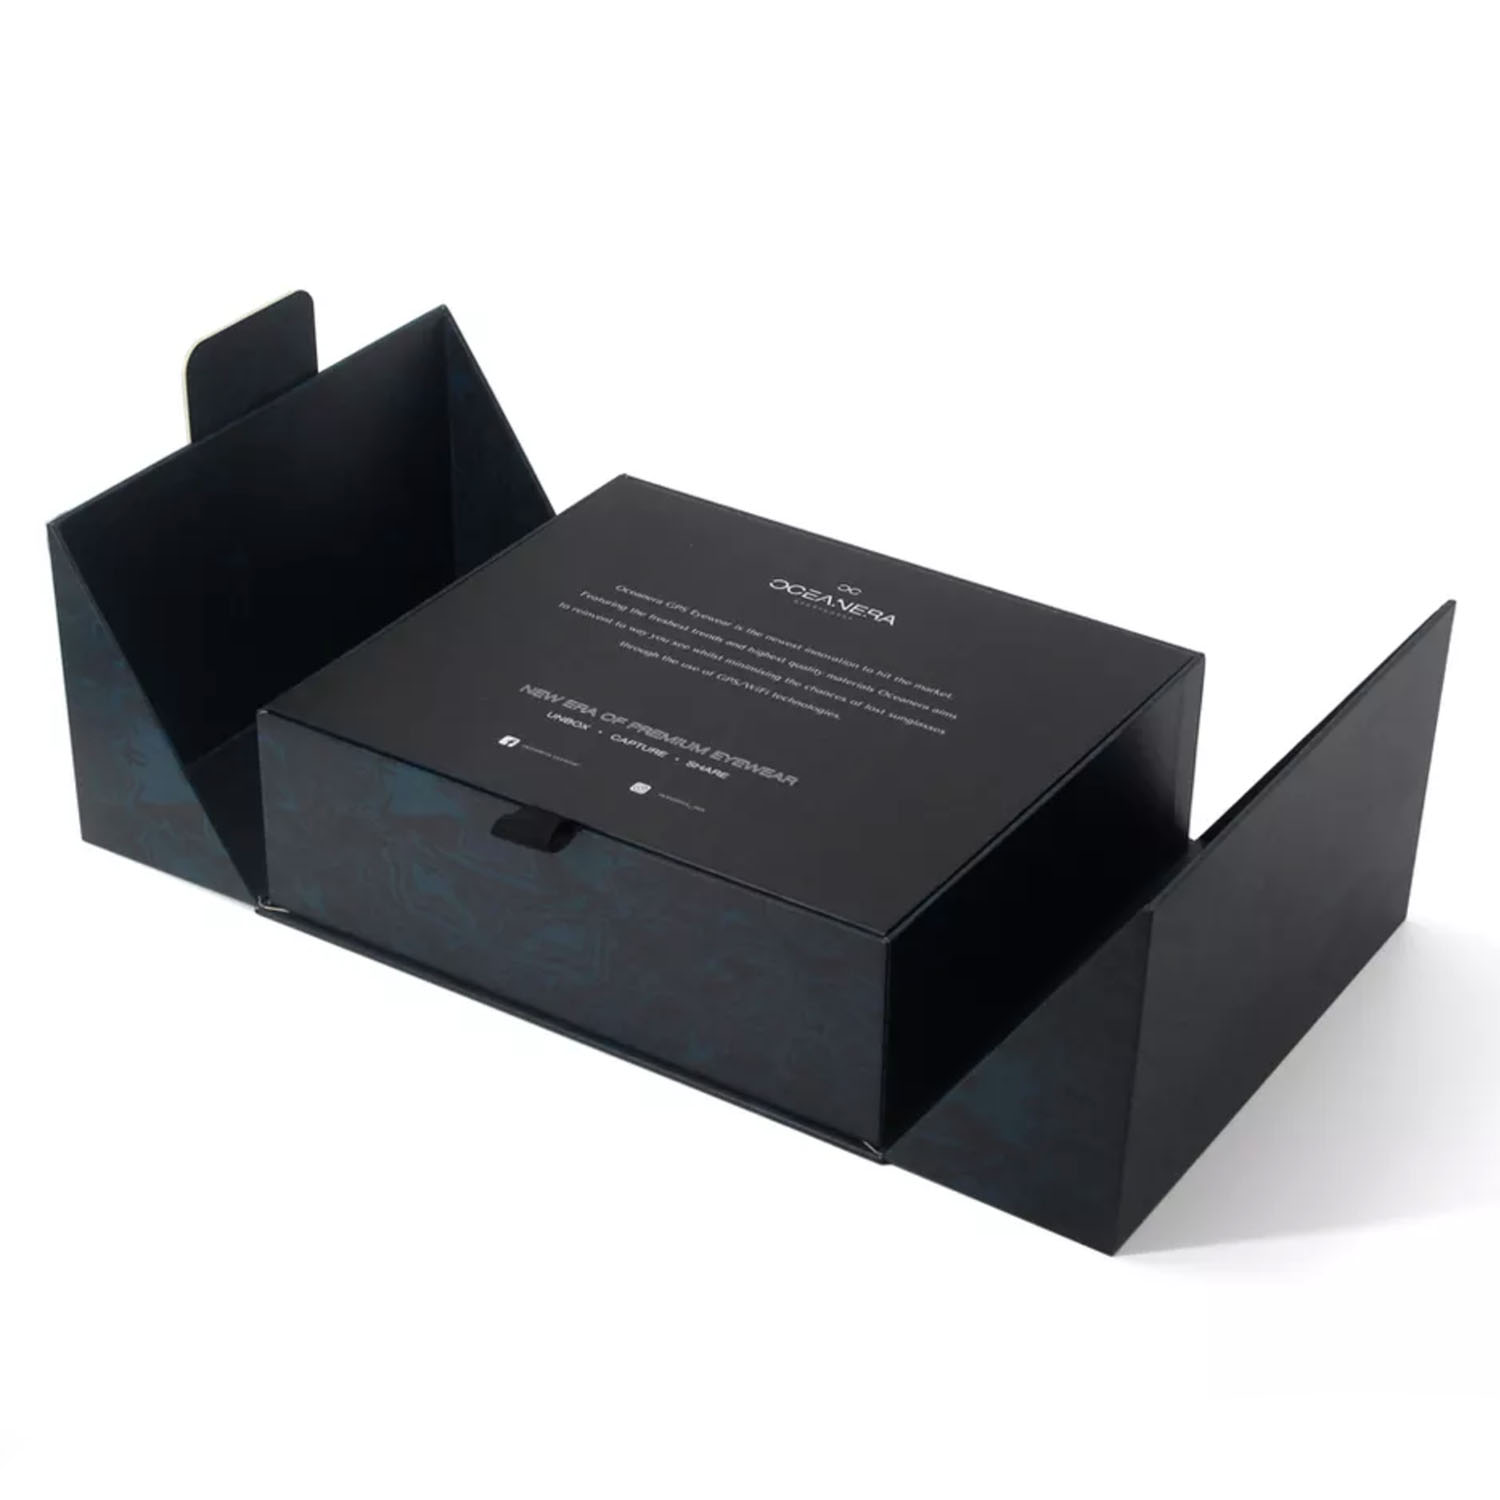 Luxury Custom Design Printed Black Packaging Box - PRESTIGE CREATIONS FACTORY CUSTOM BAGS - CUSTOM - HOTEL AMENITIES